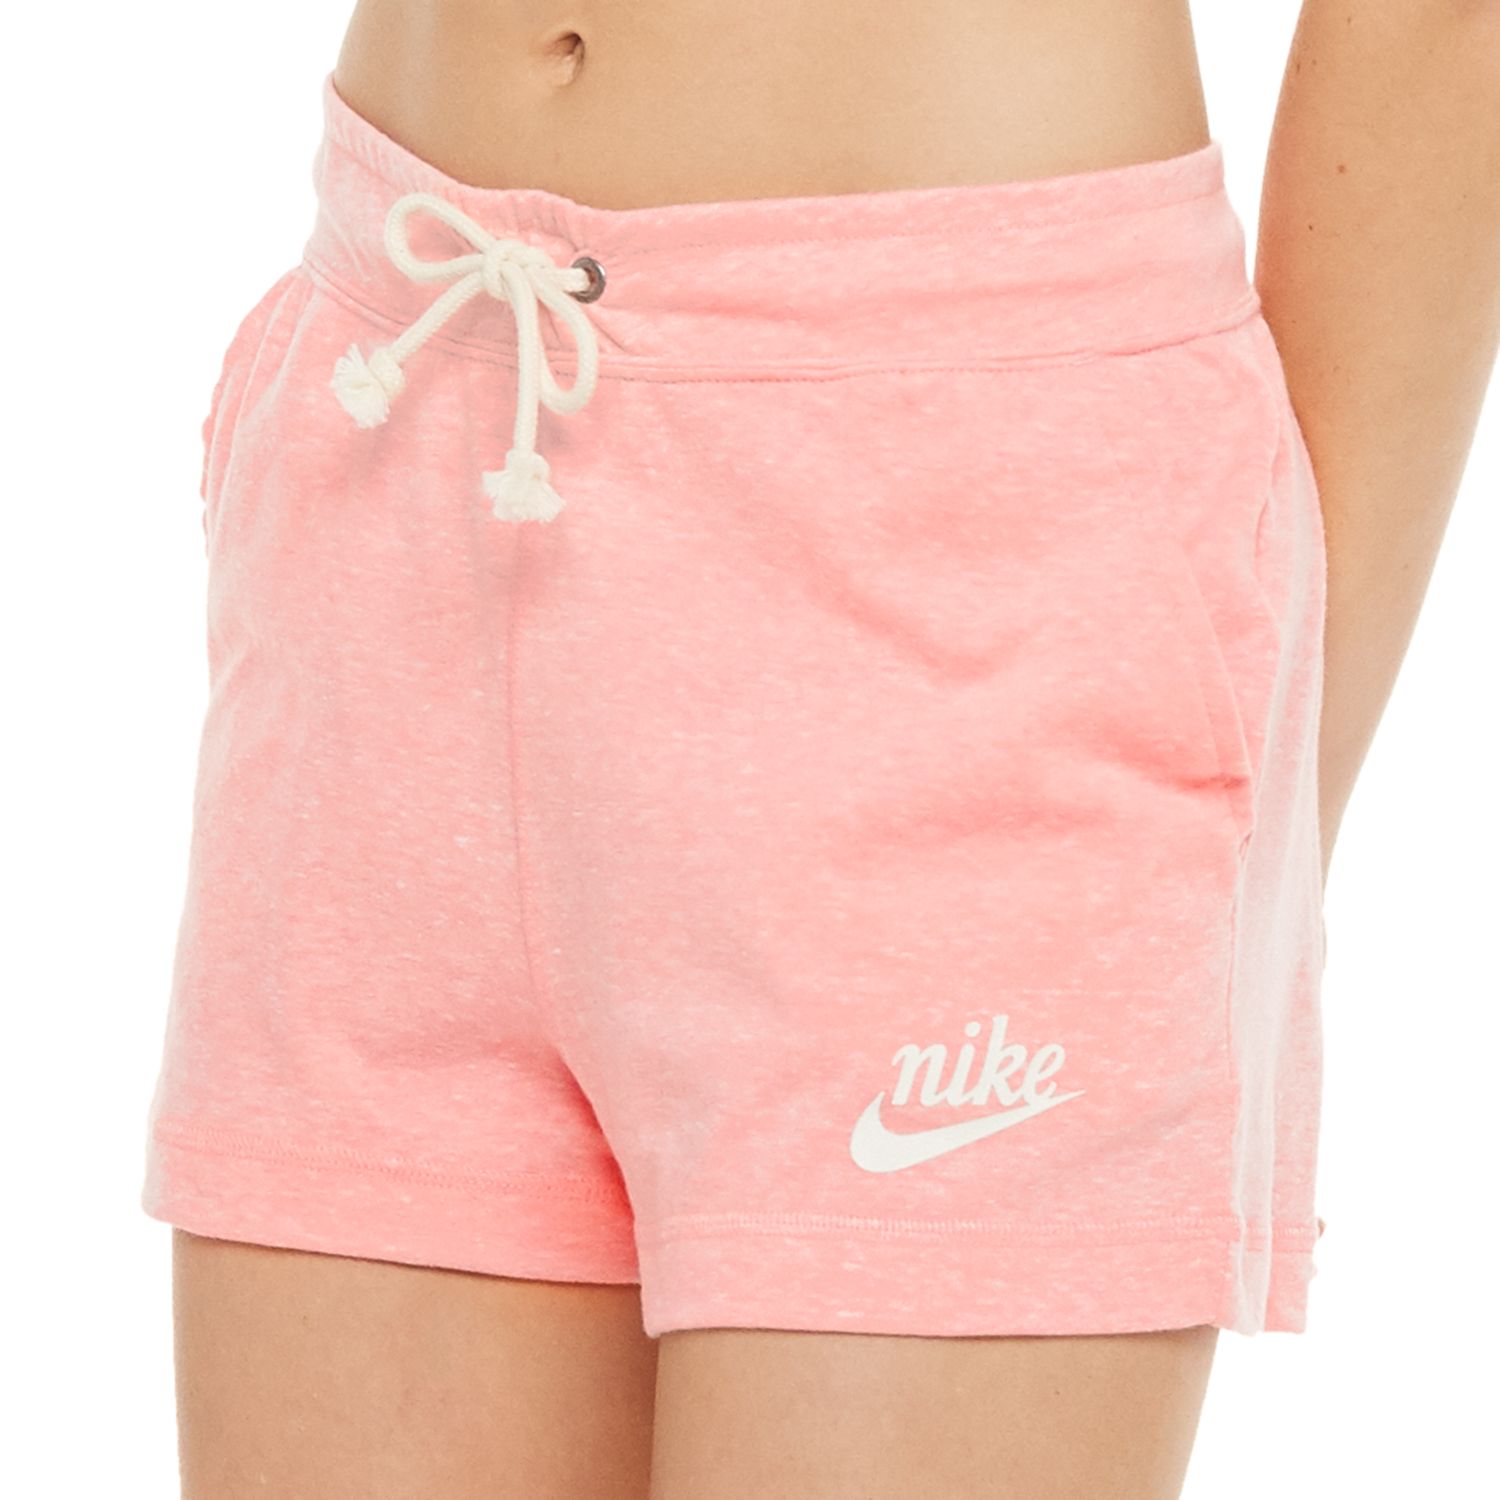 nike shorts women cotton